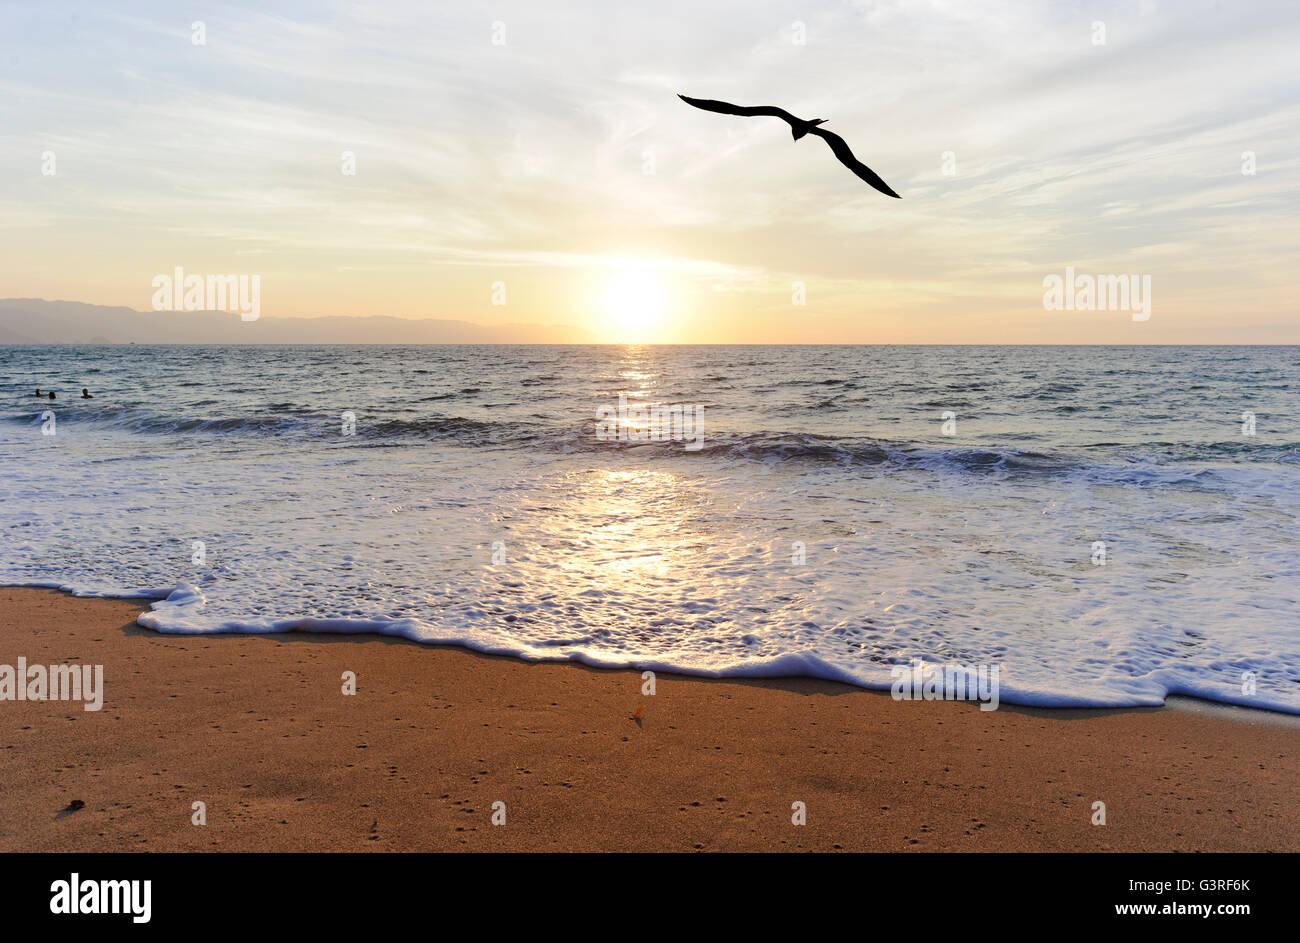 Ozean-Vogel-Silhouette ist ein einziger Silhouette Vogel fliegen in Richtung der untergehenden Sonne. Stockfoto